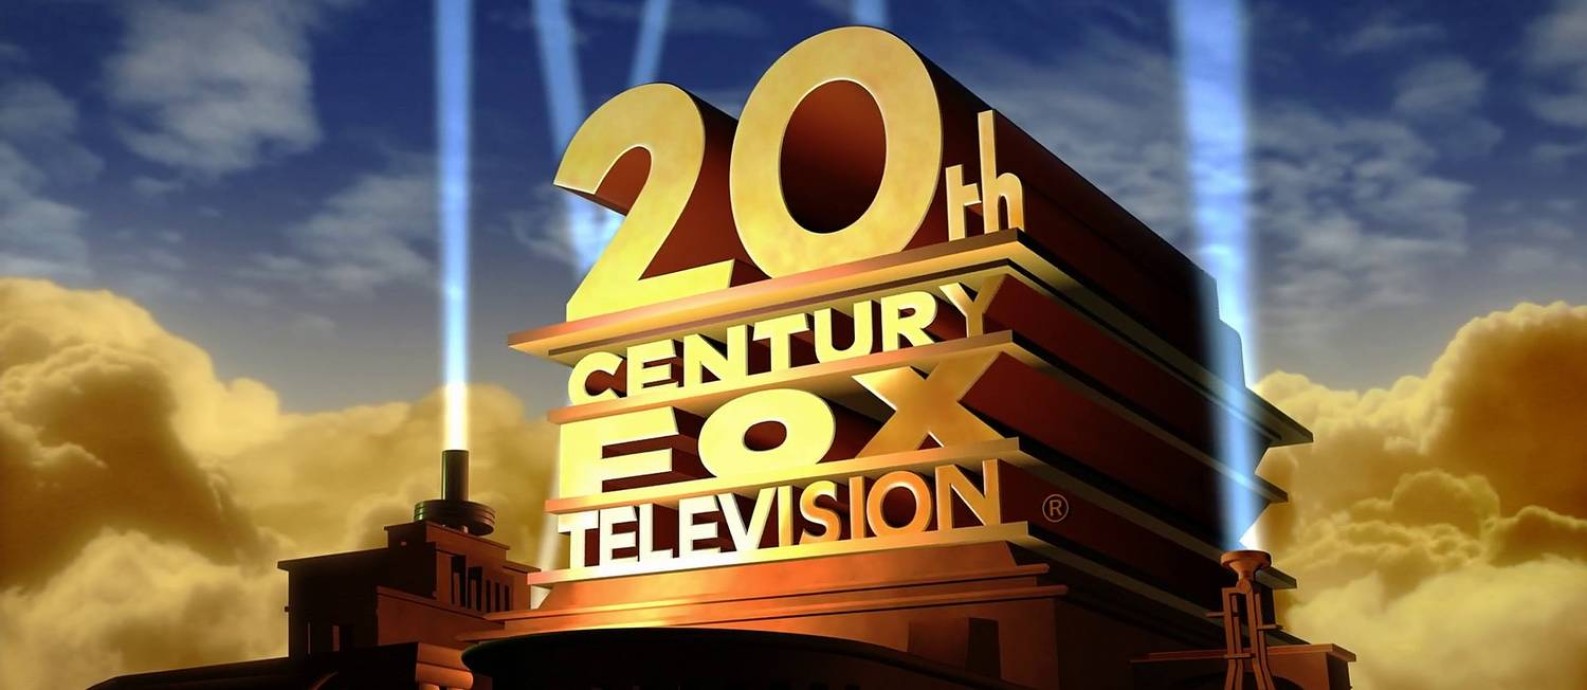 O estúdio de TV 20th Century Fox Television será chamado apenas como 20th Television Foto: Reprodução